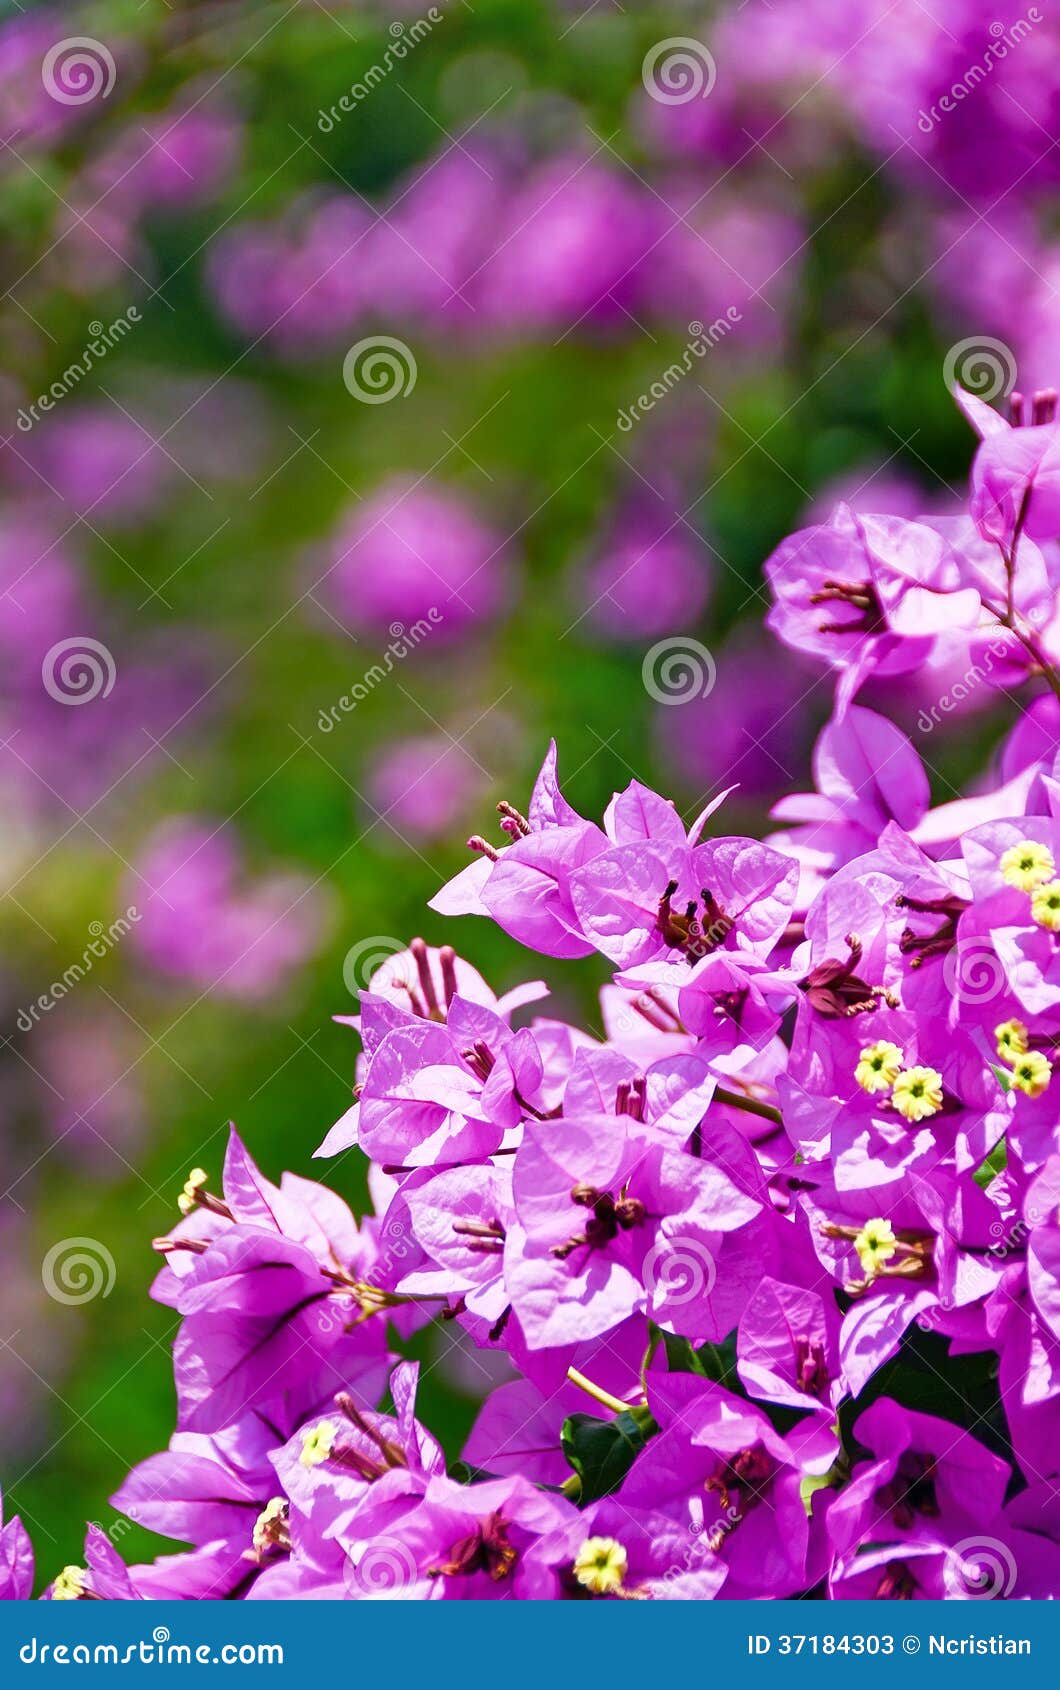 淡紫色的花 库存照片. 图片 包括有 产物, 野花, 本质, 绿色, 粉红色, 紫色, 花瓣, 上升了 - 241340808